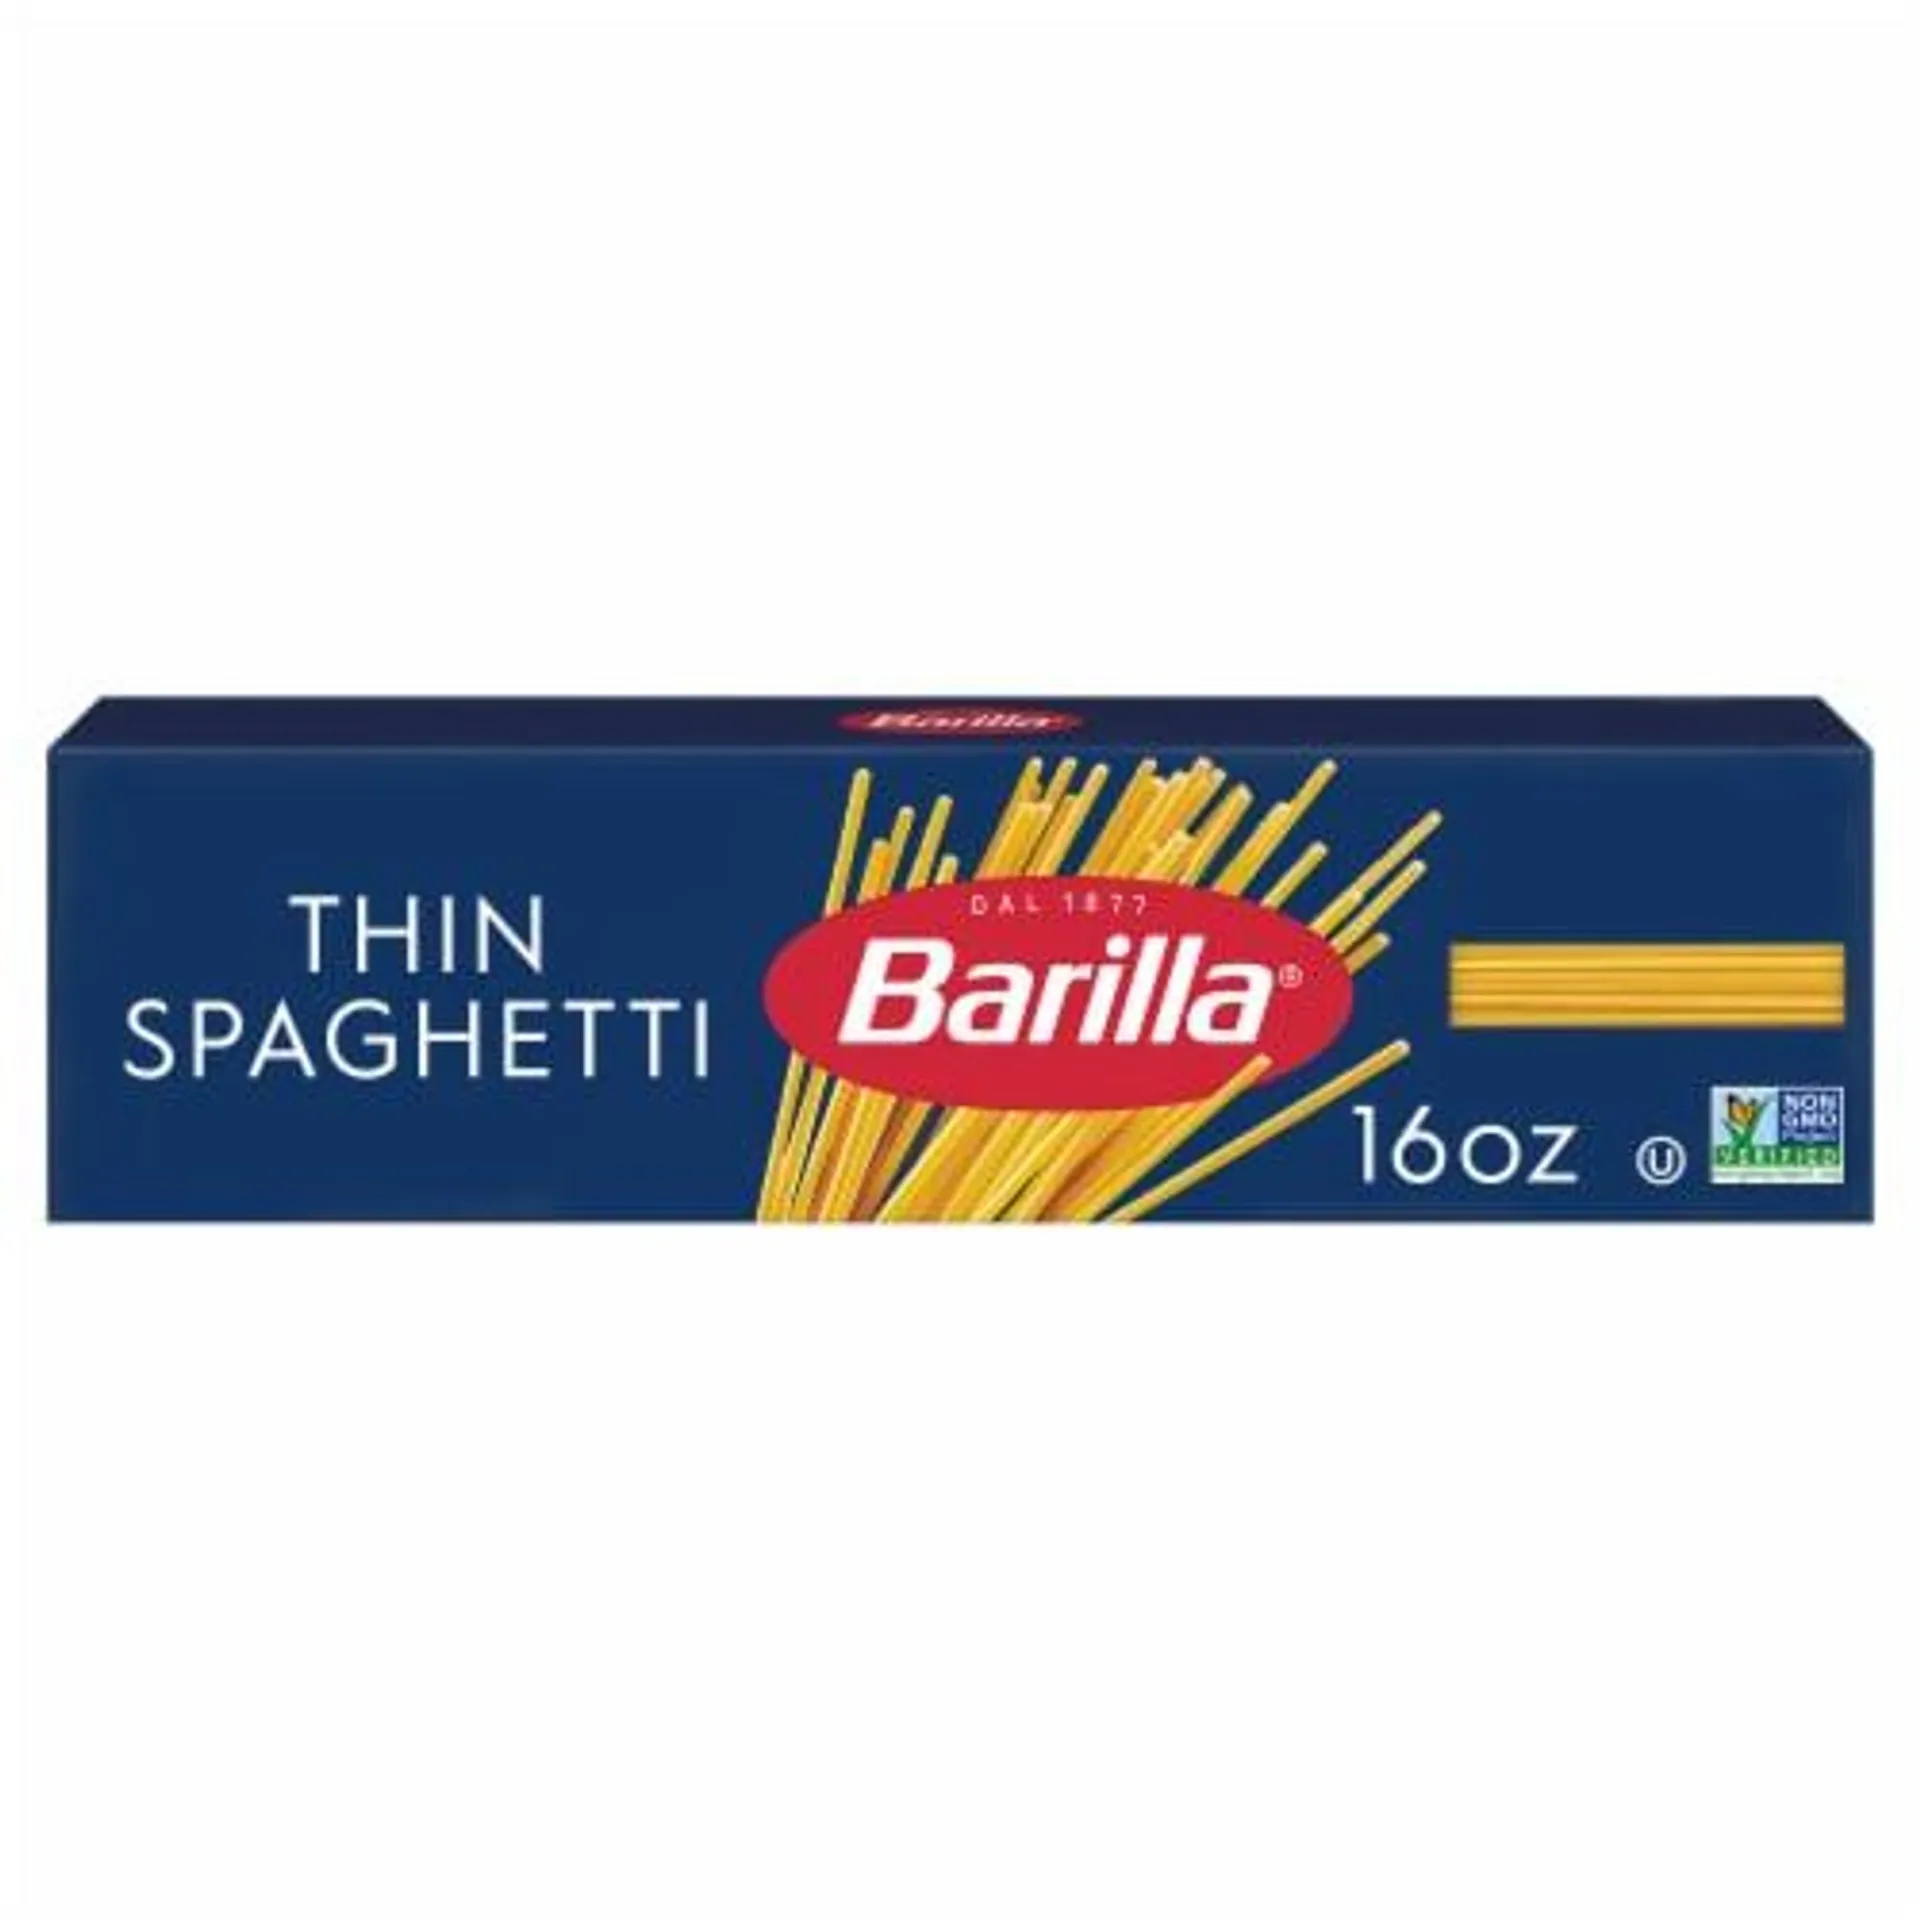 Barilla Thin Spaghetti Pasta Quality Non-GMO and Kosher Certified Pasta